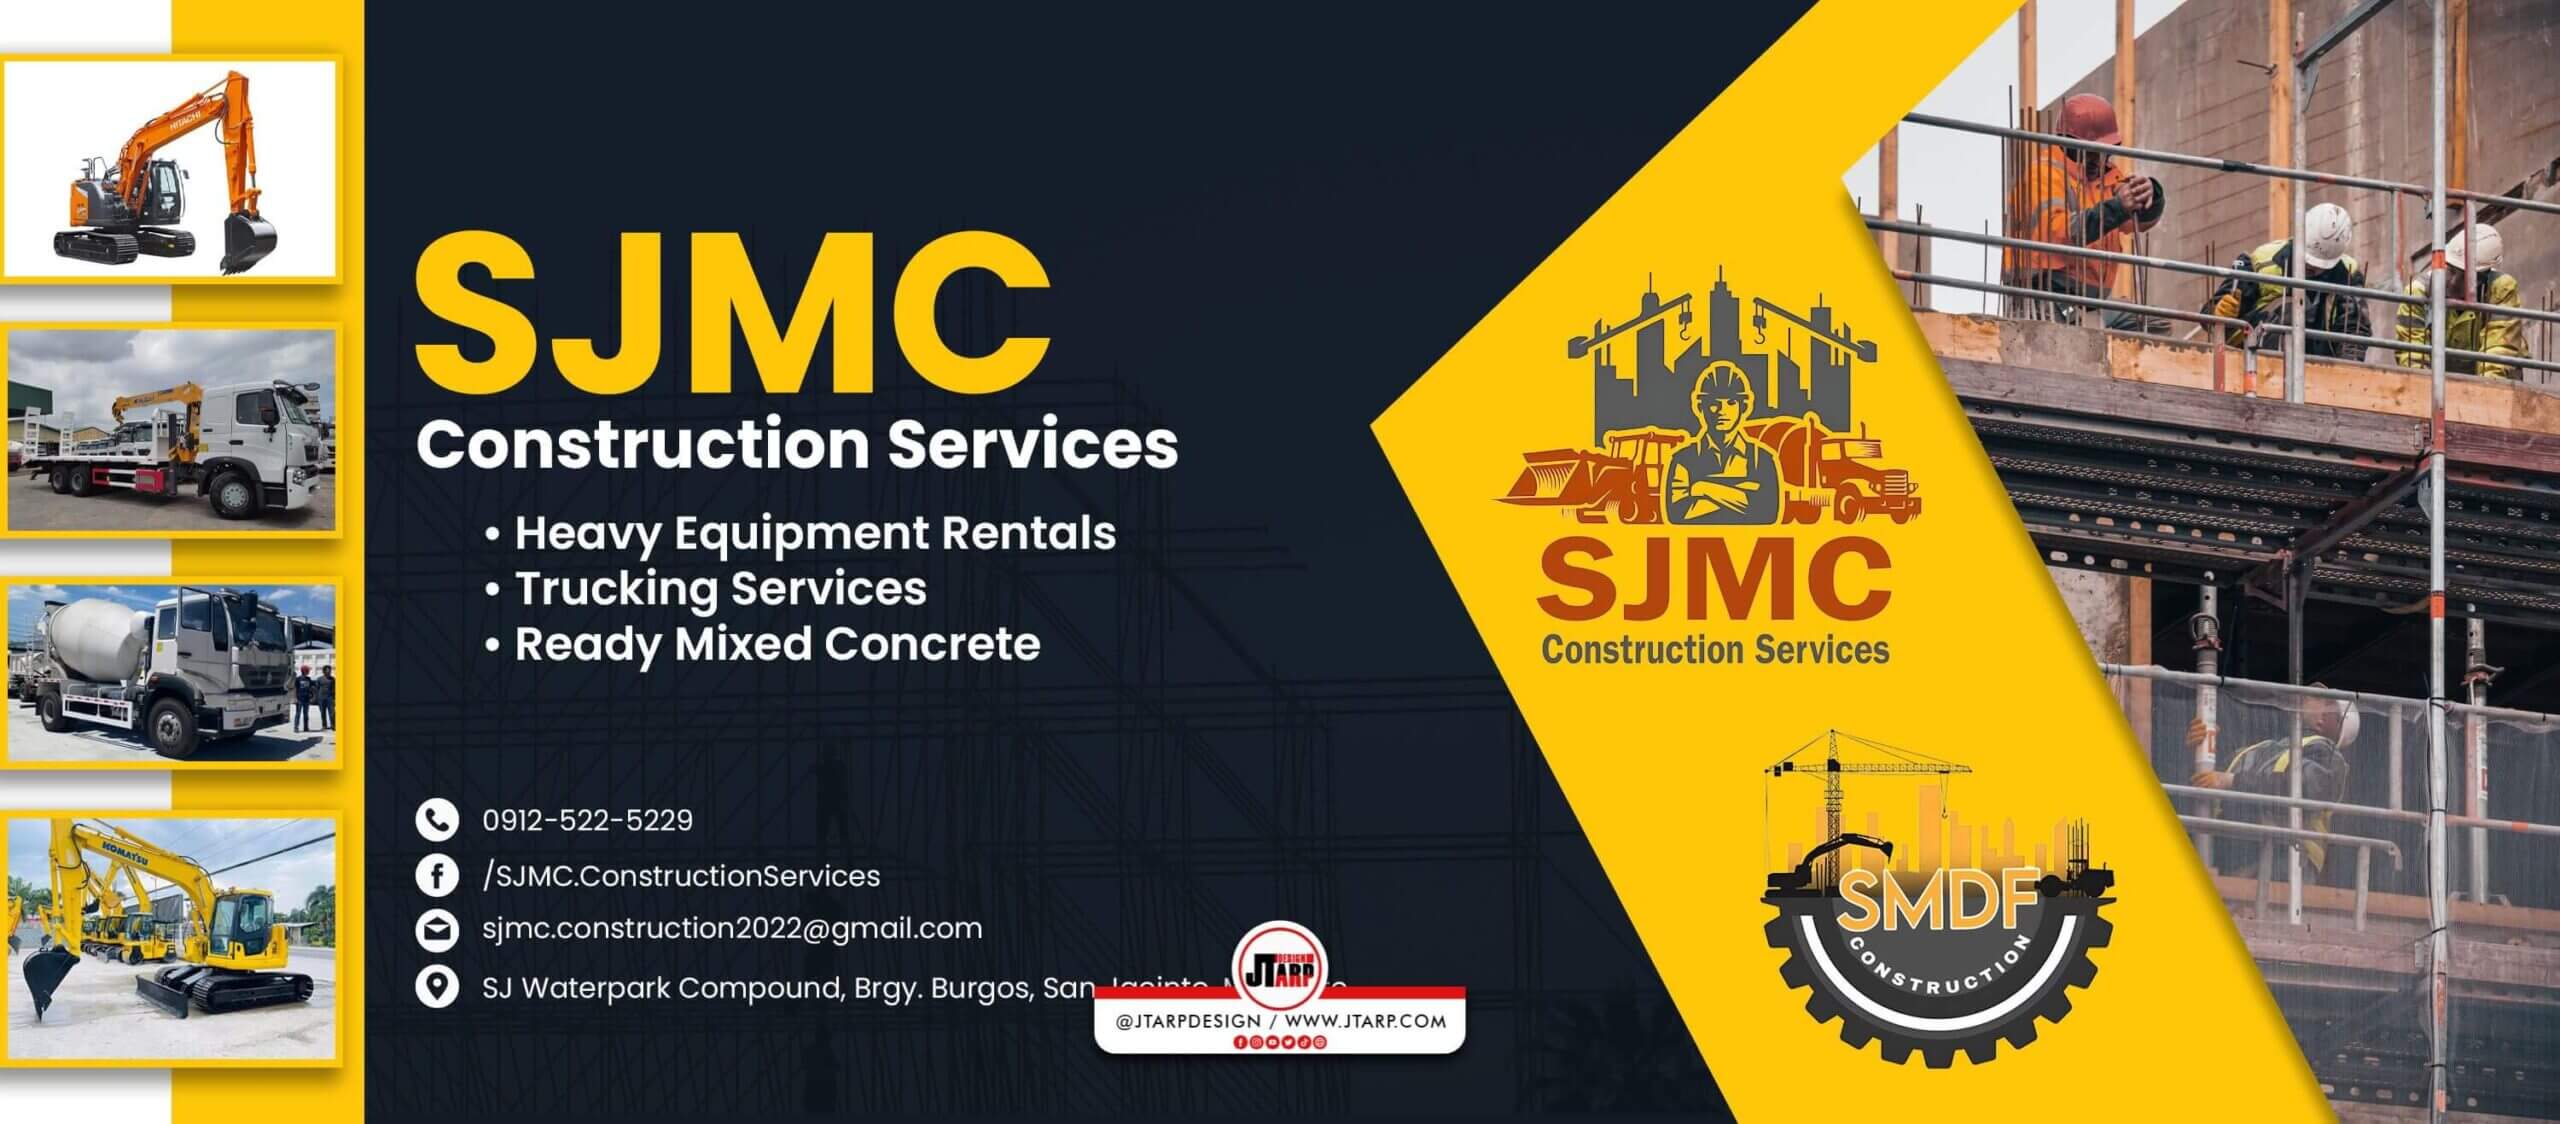 SJMC Construction Services Cover Photo copy